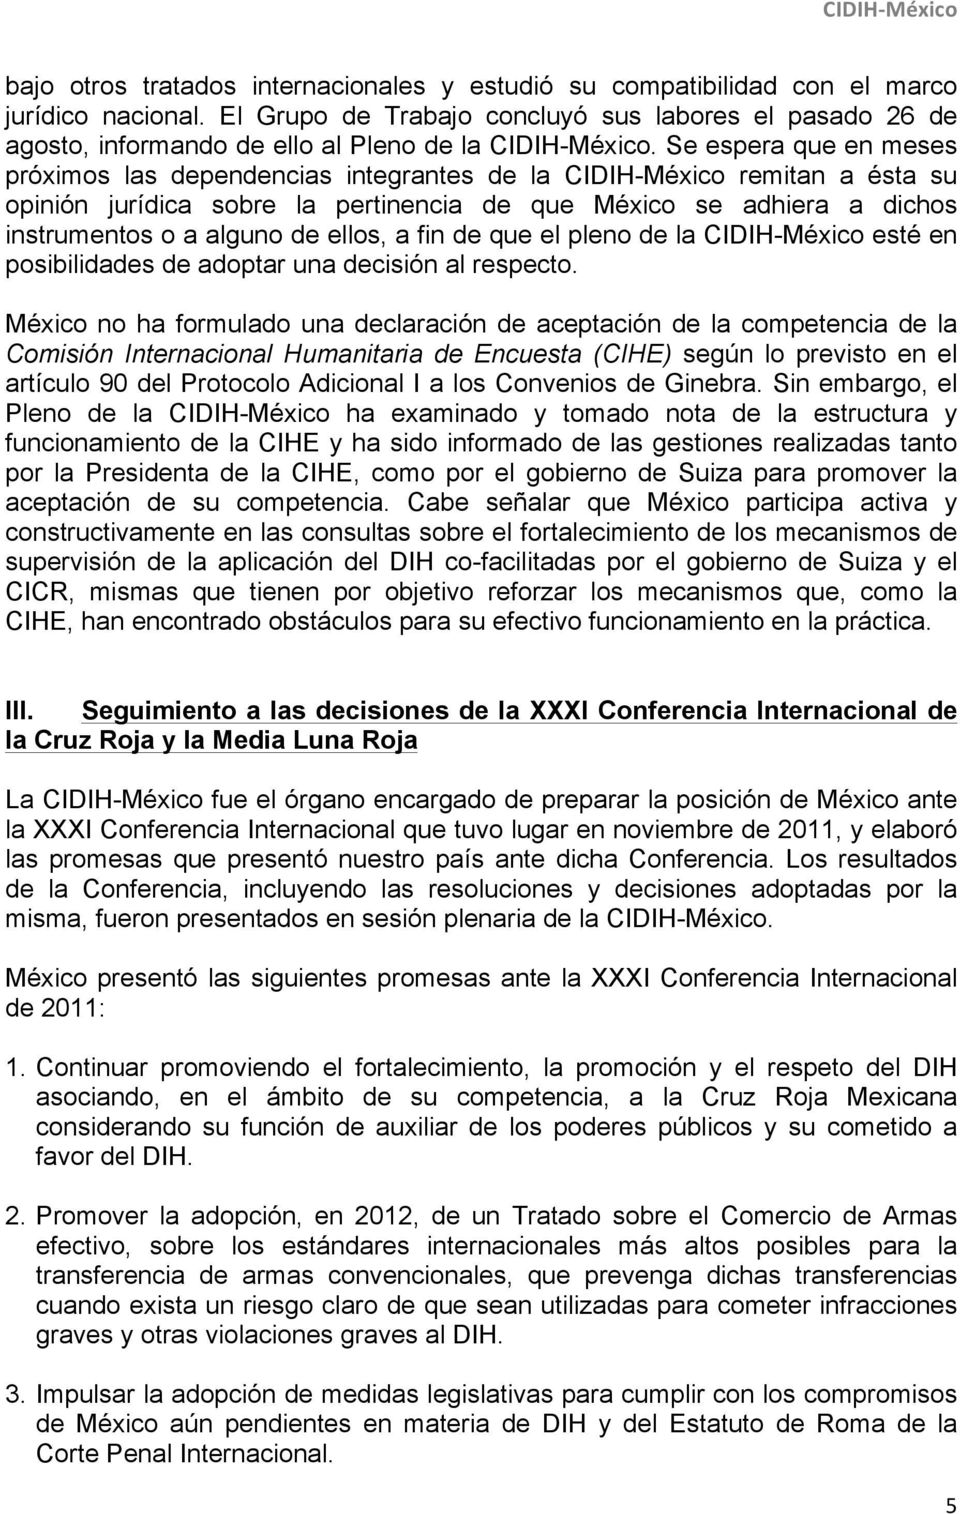 Se espera que en meses próximos las dependencias integrantes de la CIDIH-México remitan a ésta su opinión jurídica sobre la pertinencia de que México se adhiera a dichos instrumentos o a alguno de